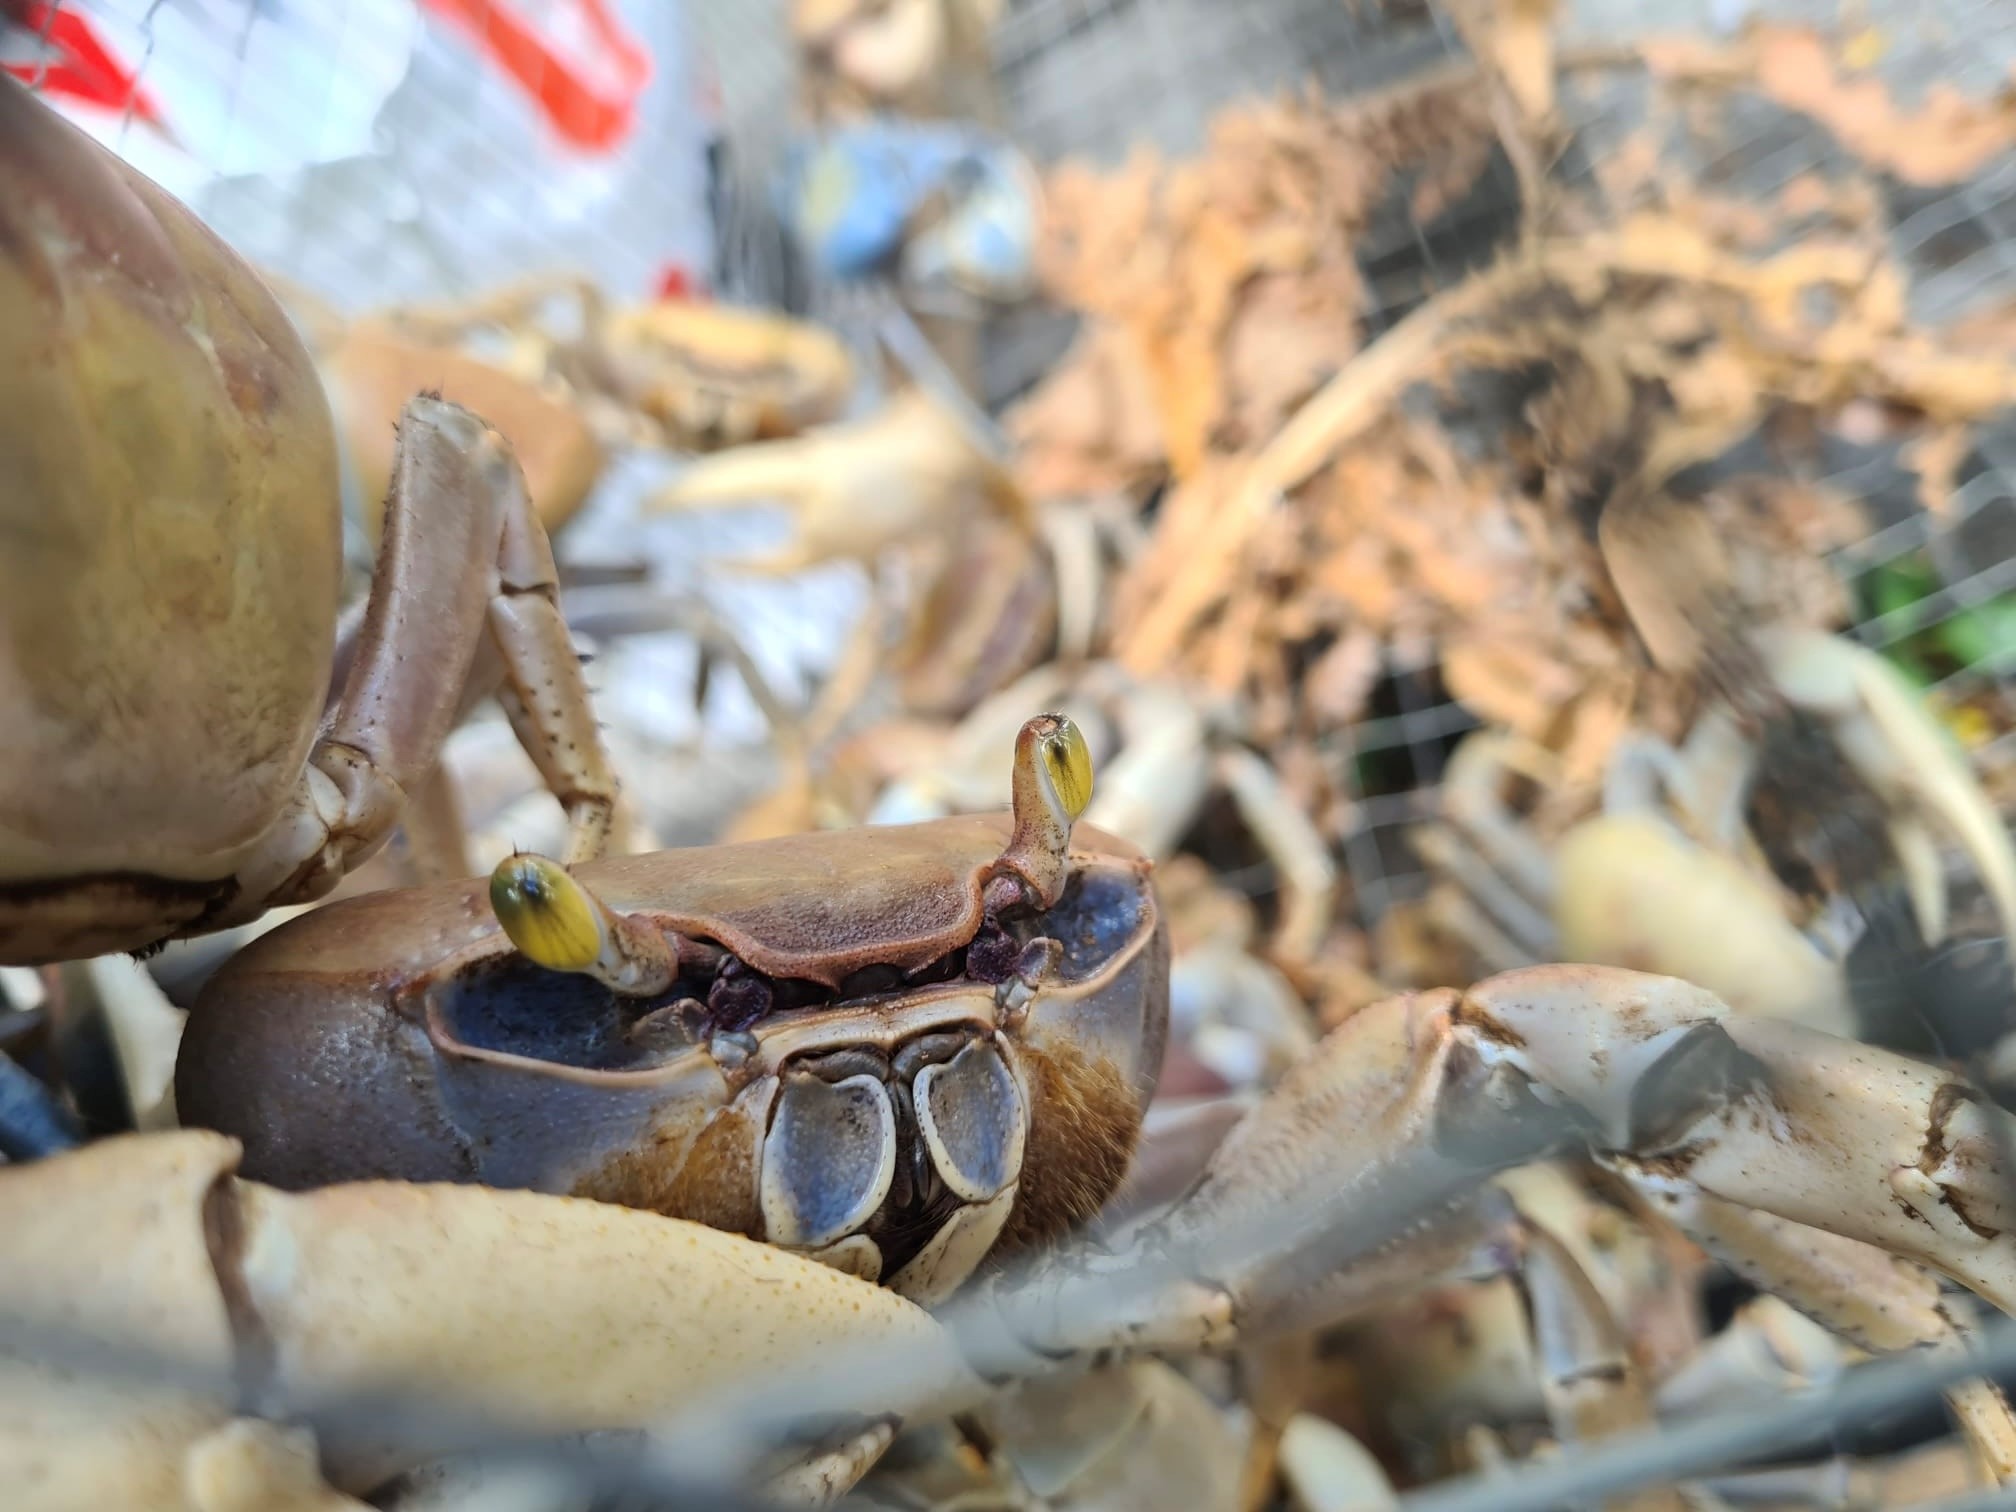     Pentecôte : le crabe de retour sur les tables

